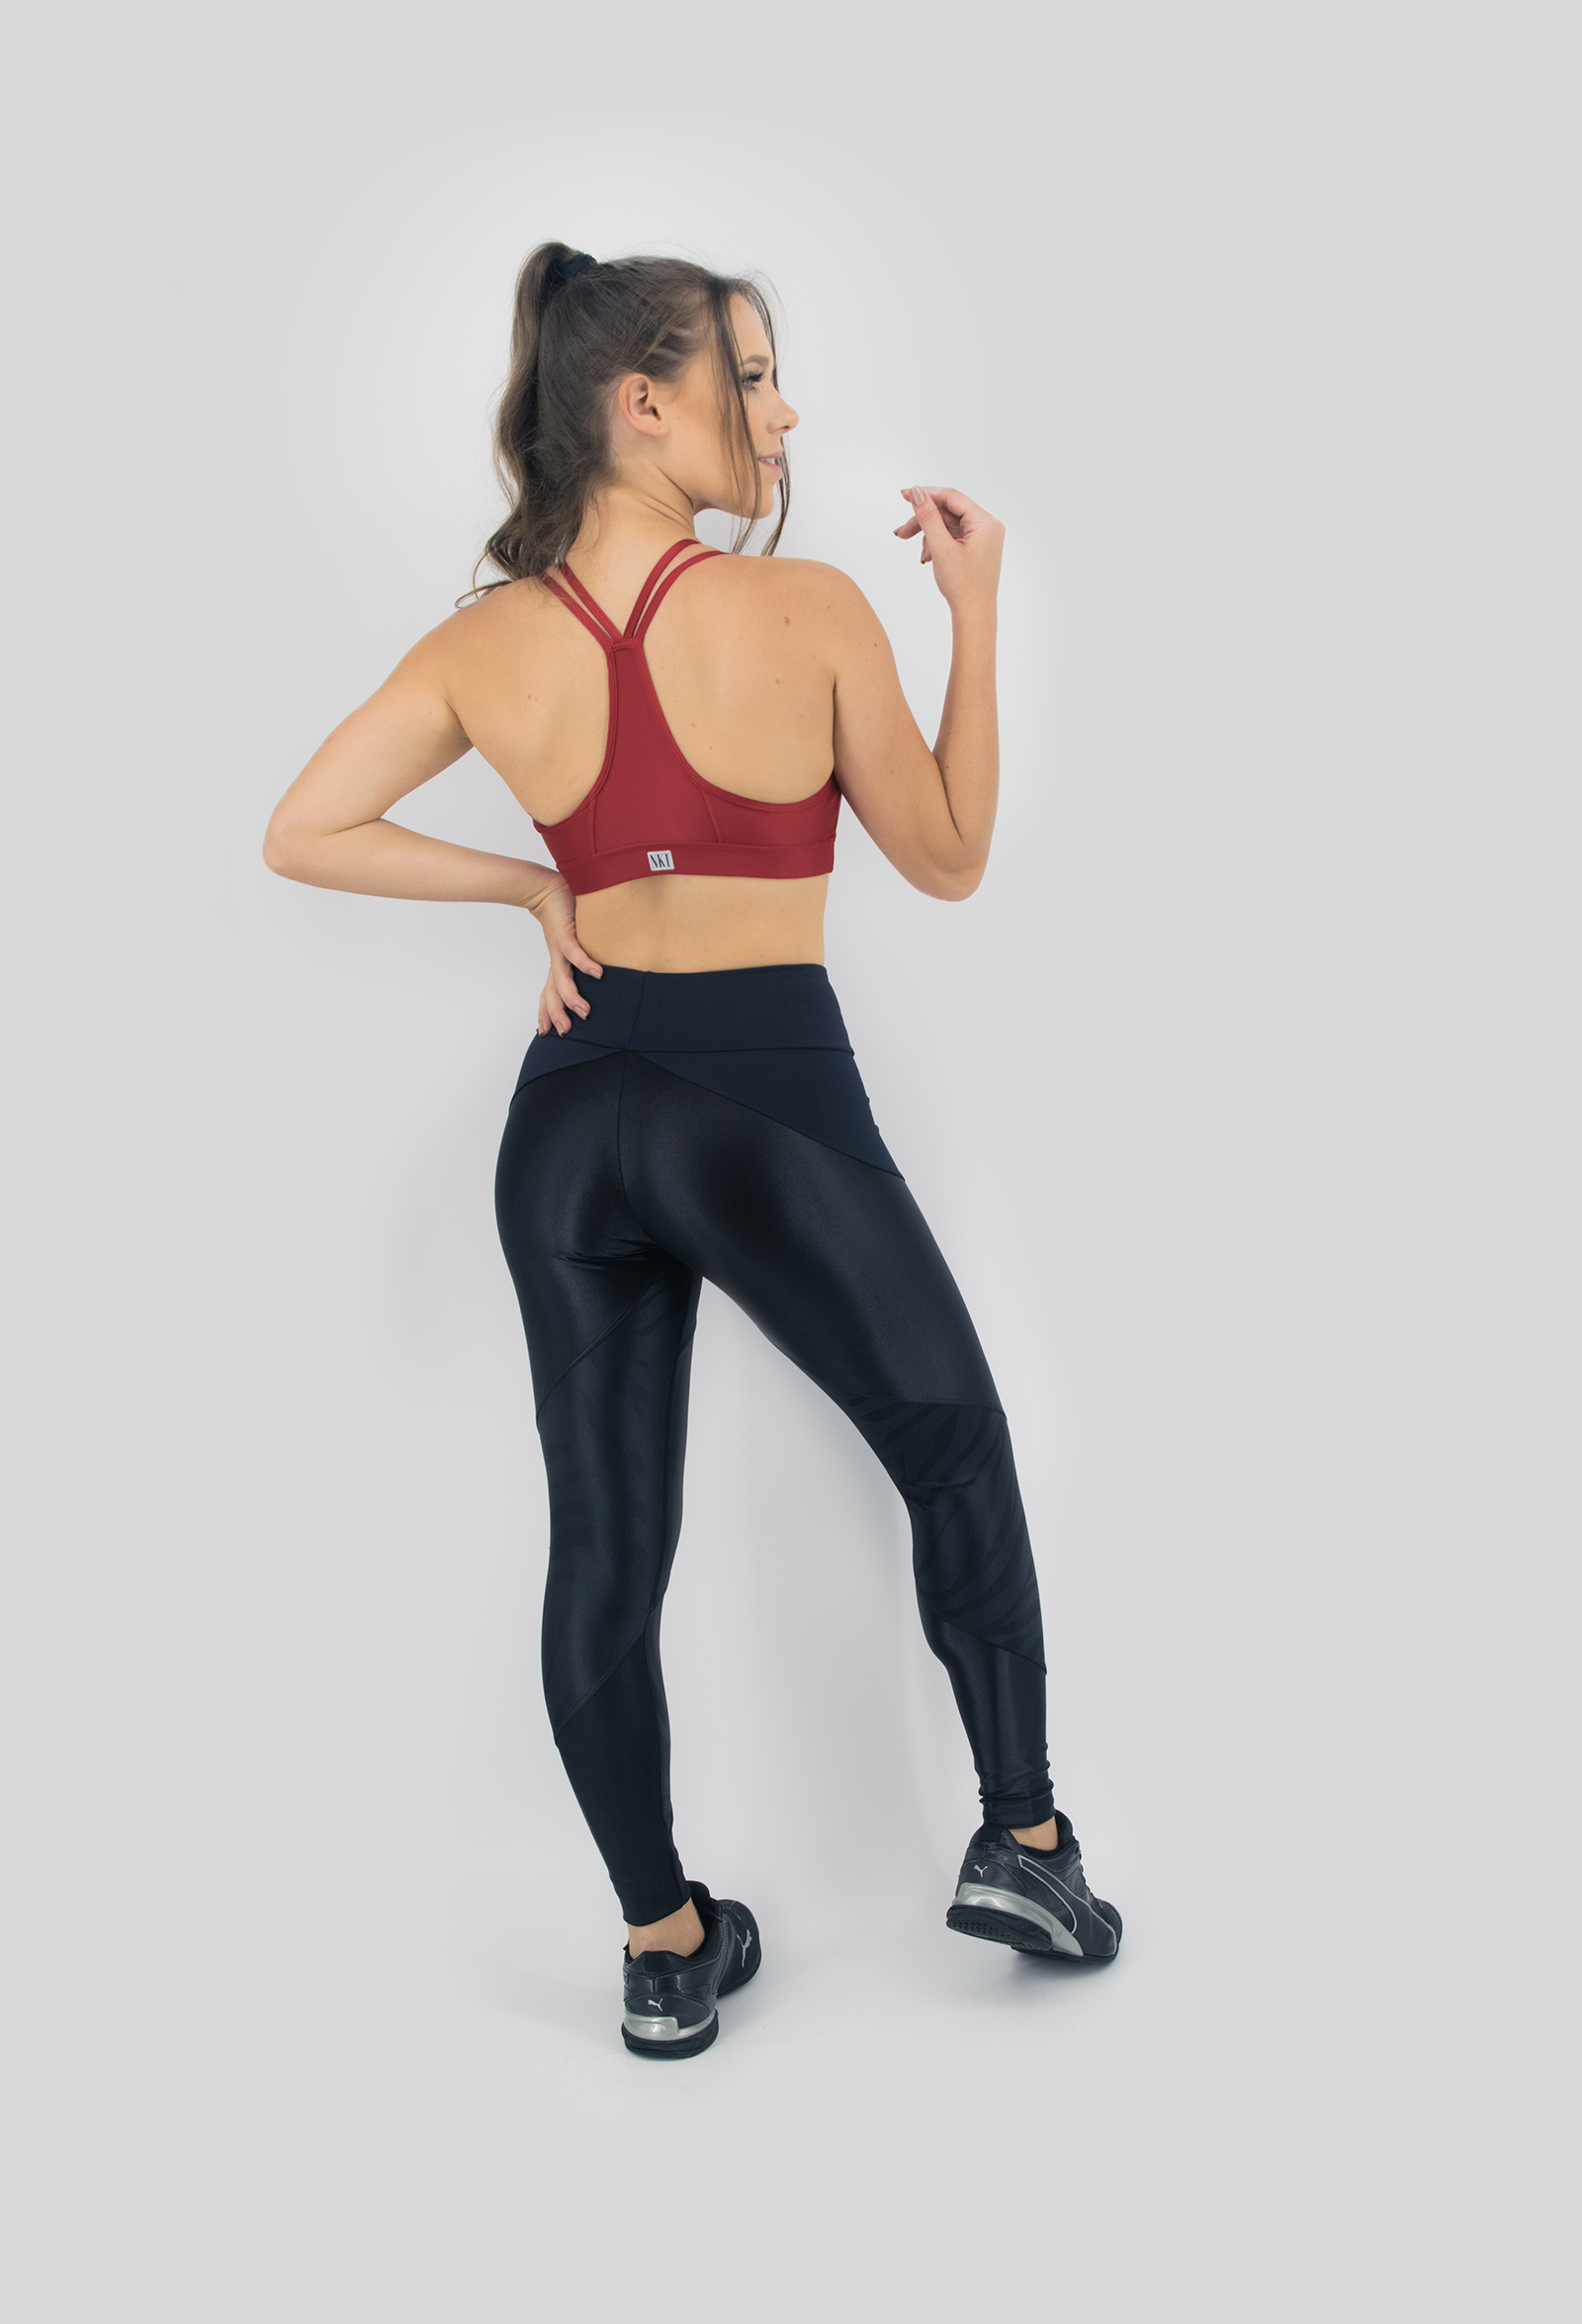 Top Perfection Vermelho, Coleção Move Your Body - NKT Fitwear Moda Fitness